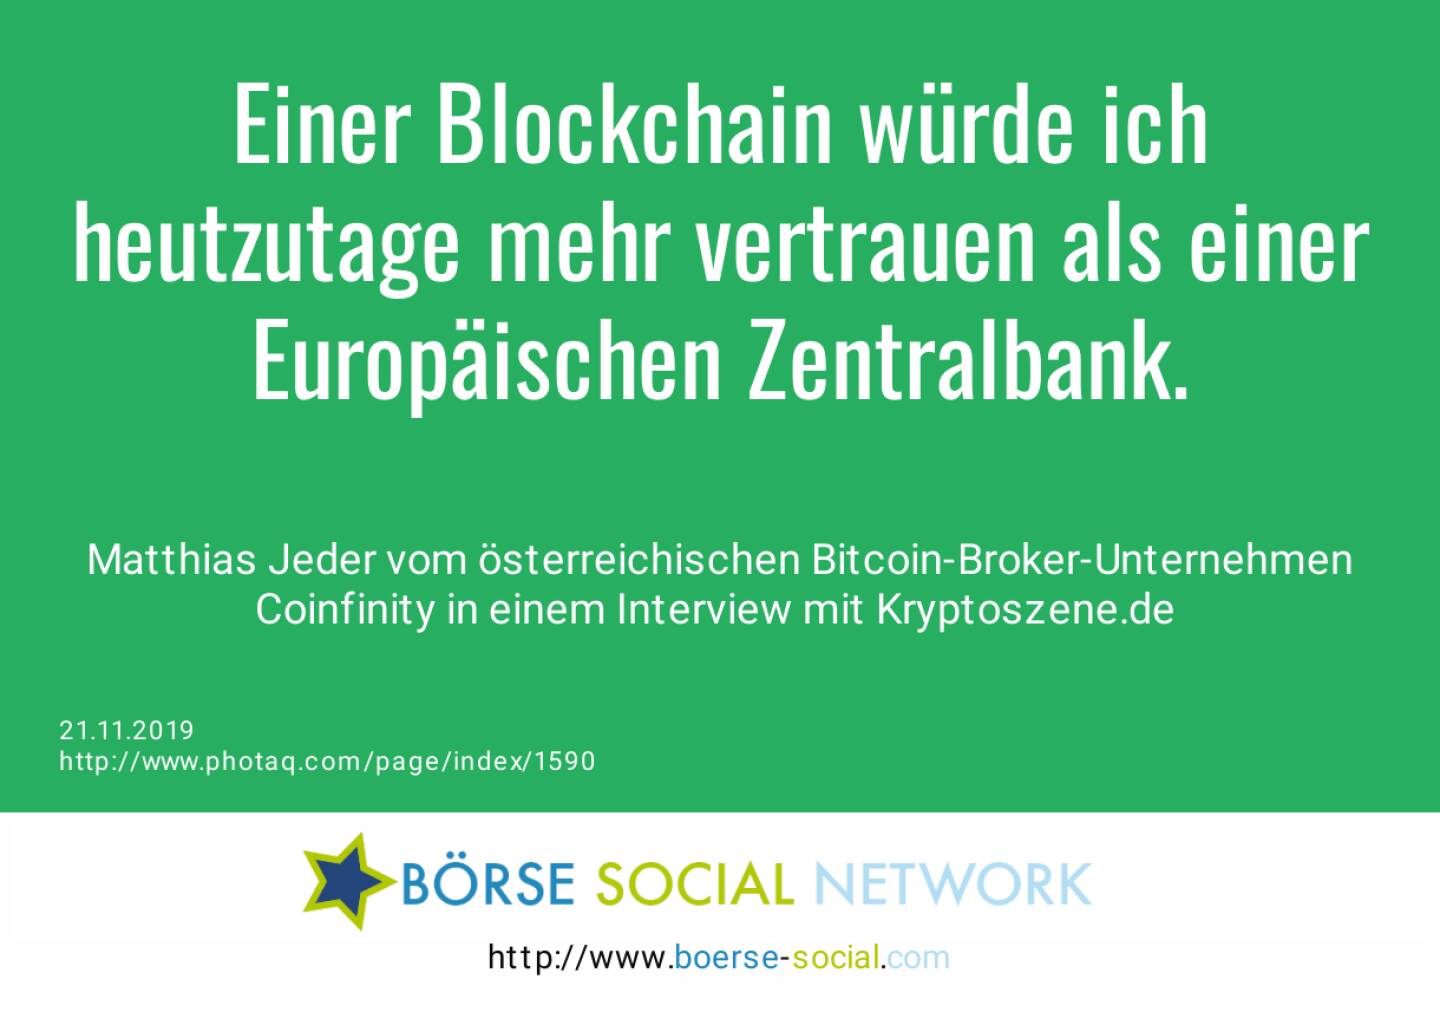 Einer Blockchain würde ich heutzutage mehr vertrauen als einer Europäischen Zentralbank.<br><br> Matthias Jeder vom österreichischen Bitcoin-Broker-Unternehmen Coinfinity in einem Interview mit Kryptoszene.de <br>